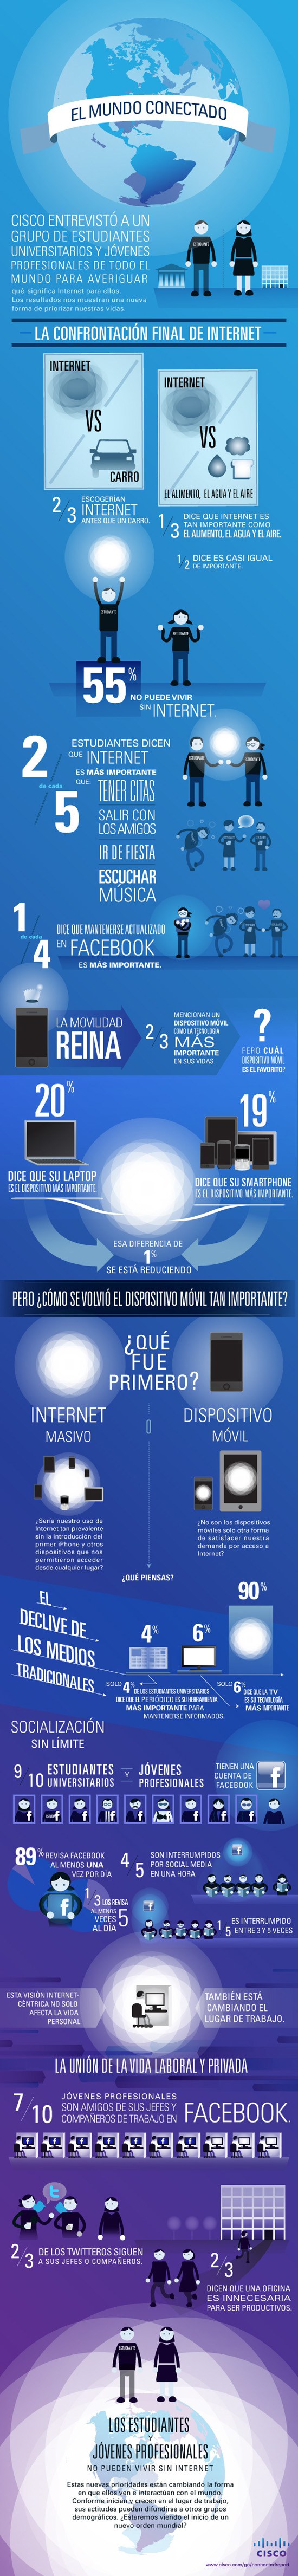 Infografia sobre Internet  (2)